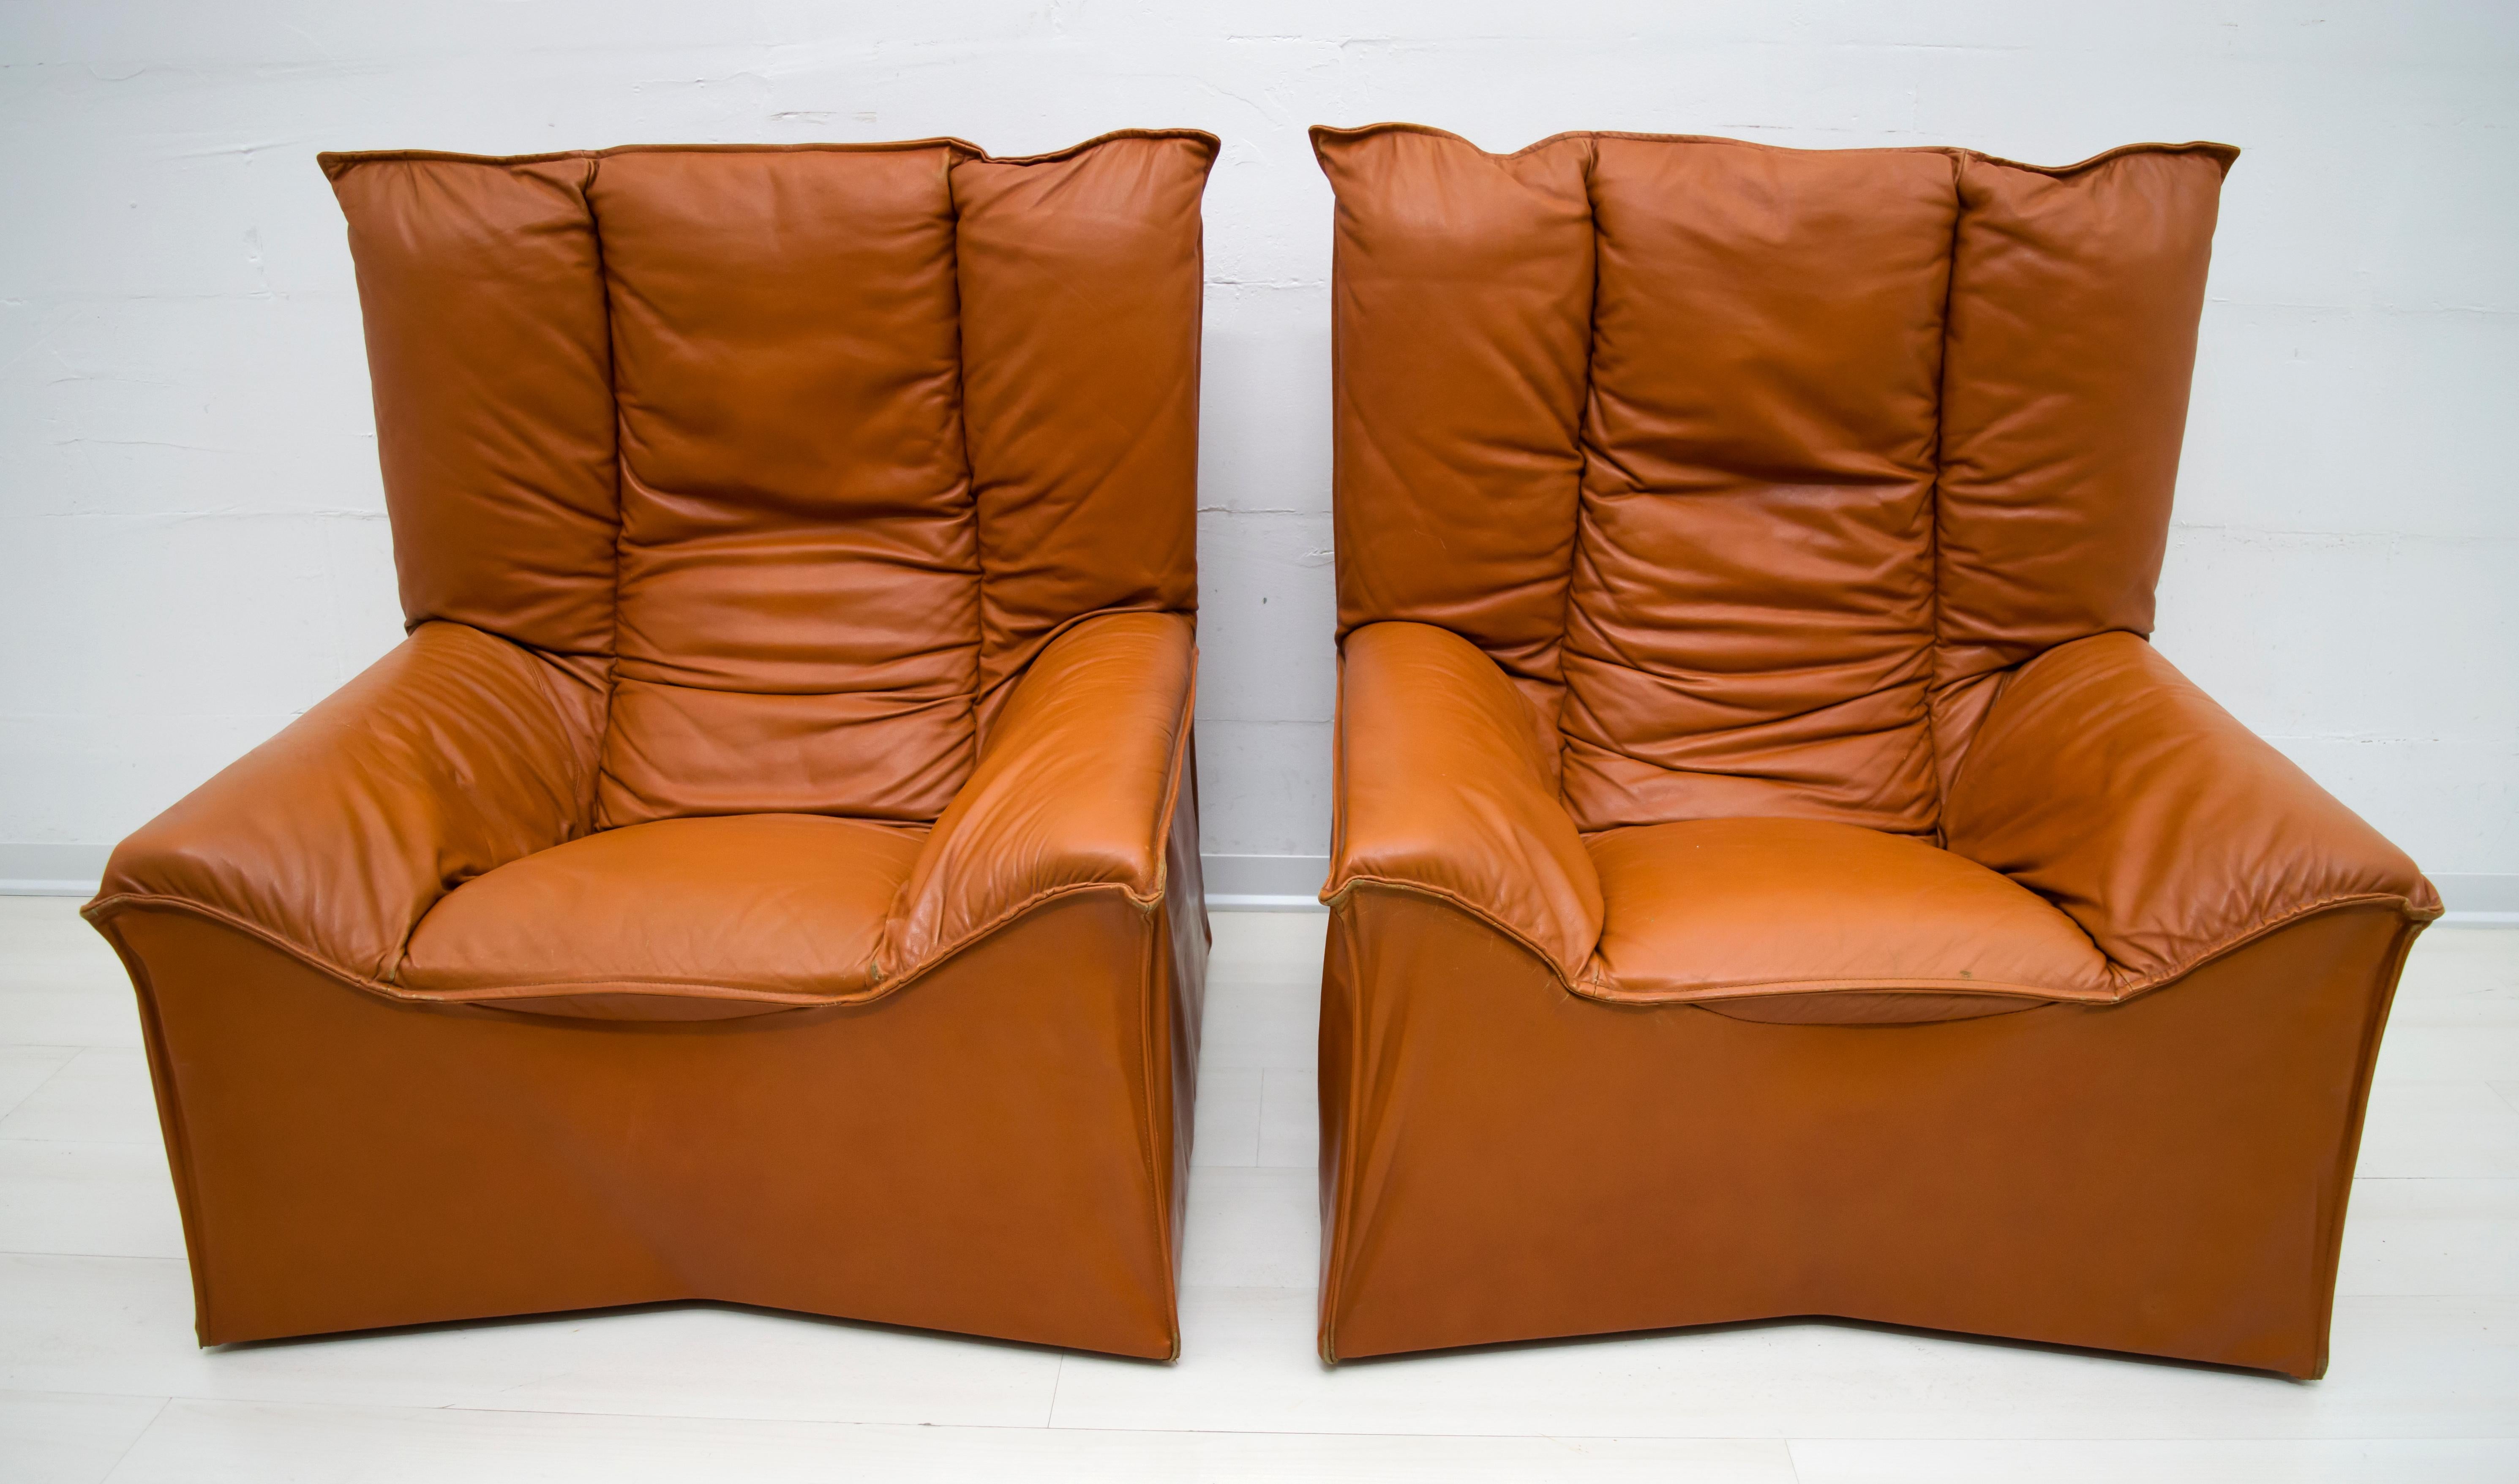 Cette paire de fauteuils tapissés de cuir véritable de couleur a été produite par la célèbre société italienne Cinova, dans les années 1960.
Cinova a fait appel à la collaboration de grands designers tels que : Carlo de Carli, Tito Agnoli, Menilio